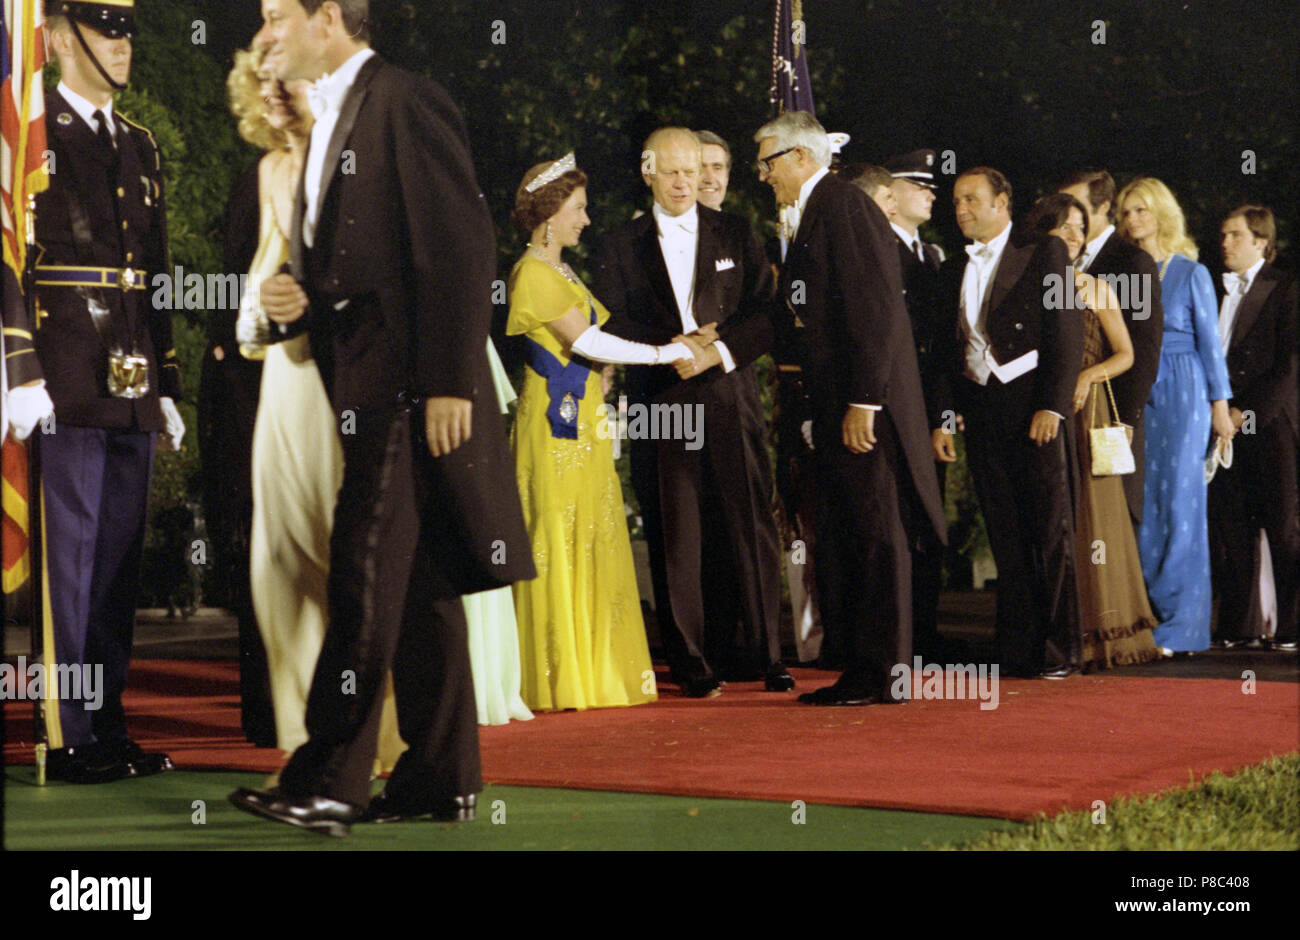 1976, 7. Juli - South Auffahrt - das Weiße Haus - Washington, DC - Gerald R. Ford, Queen Elizabeth II, Henry Catto; Cary Grant; Gäste - Begrüßung, Händeschütteln, stehen, reden; die Gäste in der Linie auf der rechten Seite des Rahmens; lange Schuß von South Lawn; weiße Krawatte formale Abnutzung - Empfang vor dem Staat Abendessen zu Ehren von Königin Elizabeth II. und Prinz Philip - Englisch US-amerikanischer Schauspieler Stockfoto